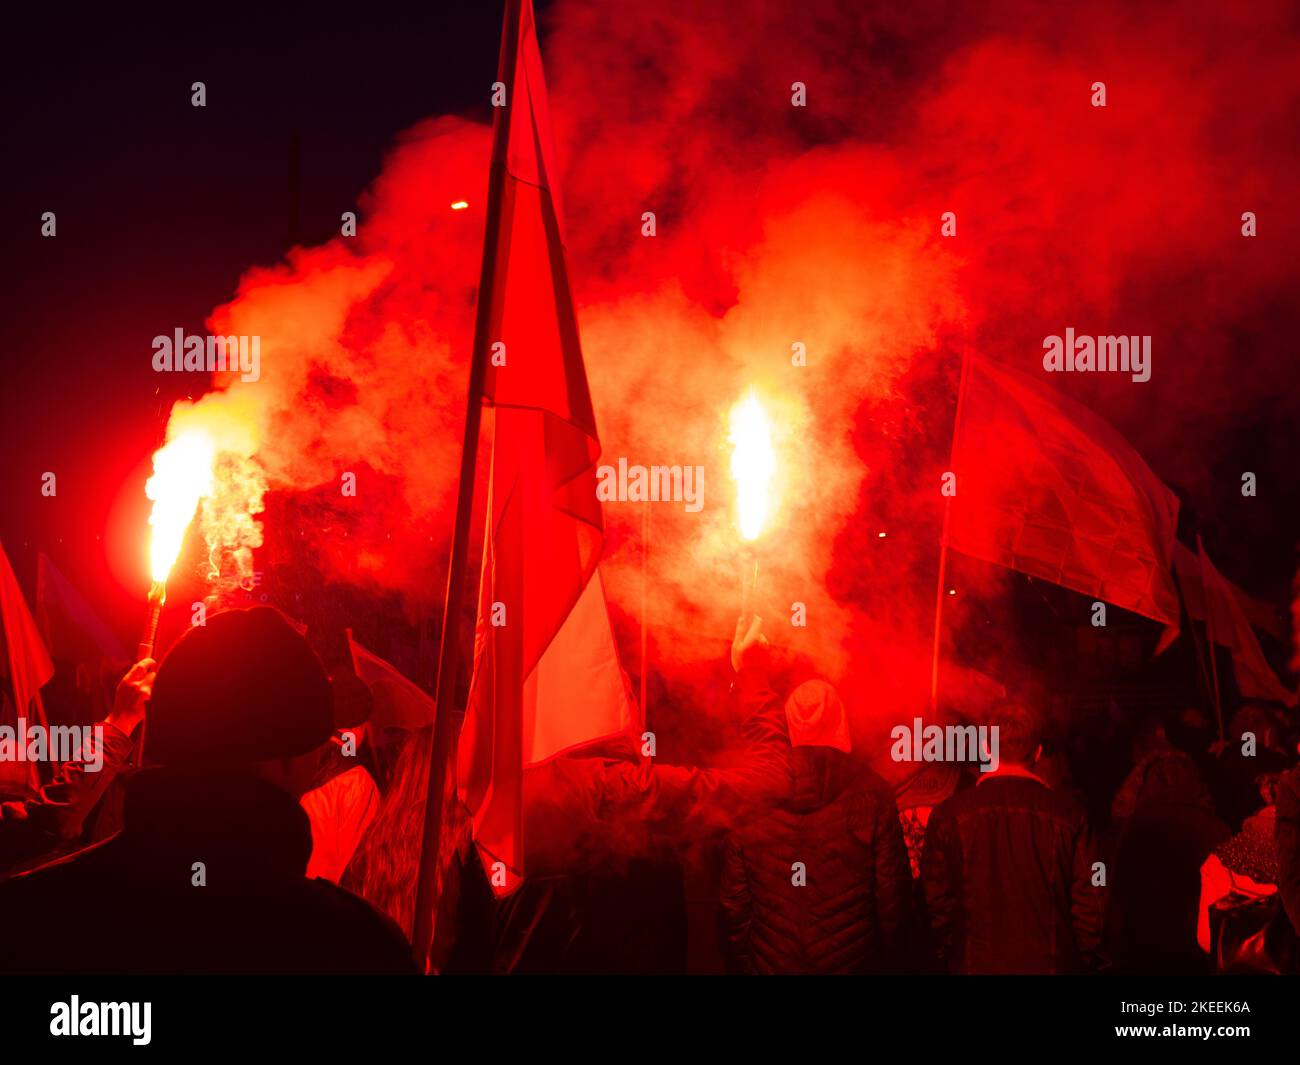 Menschen mit Fackeln und Fahnen während des Unabhängigkeitstages. Polen, 11. November 2022. unabhängigkeitsmarsch. Abend, helle Flammen von Fackeln, Rauch. Stockfoto